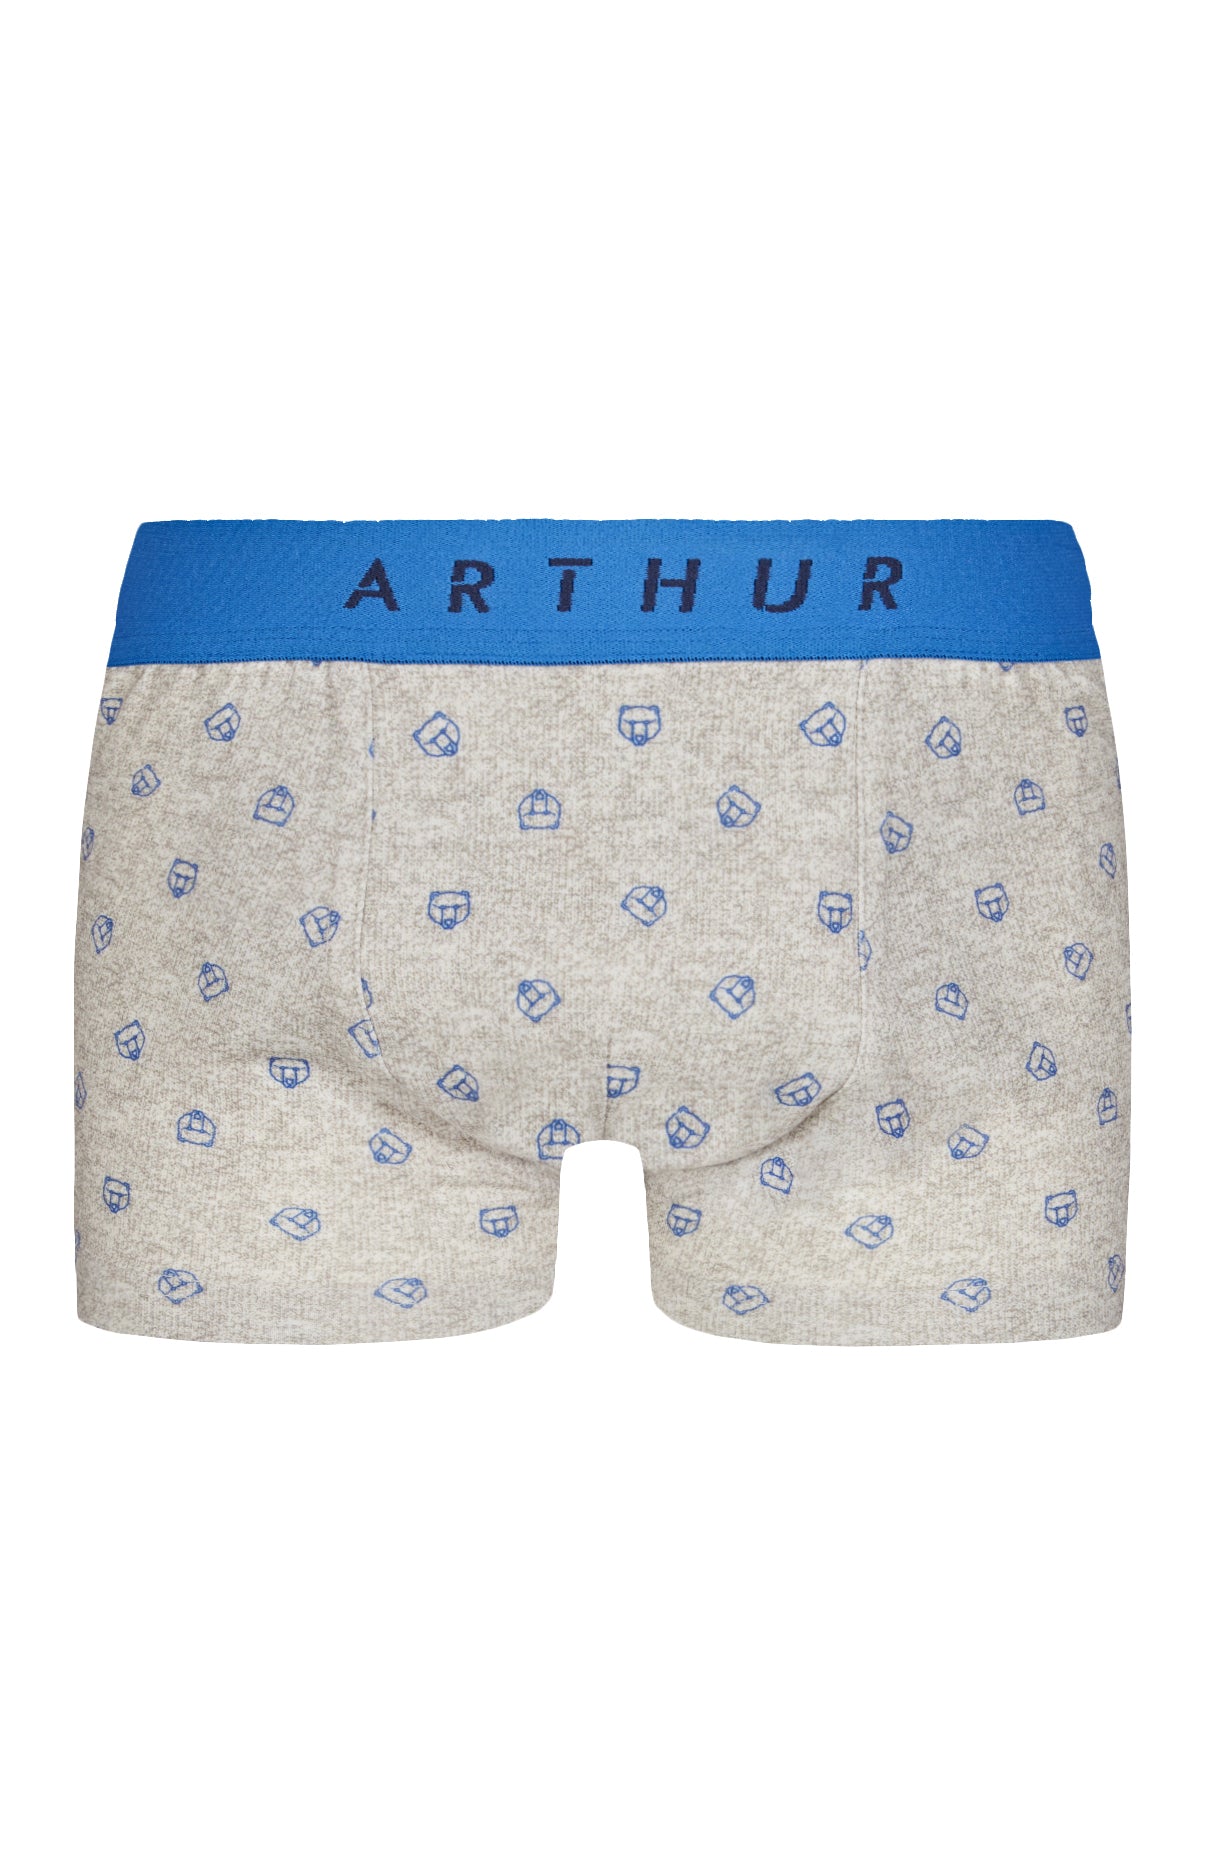 Boxer short Teddy Foot  Children's underwear – Arthur